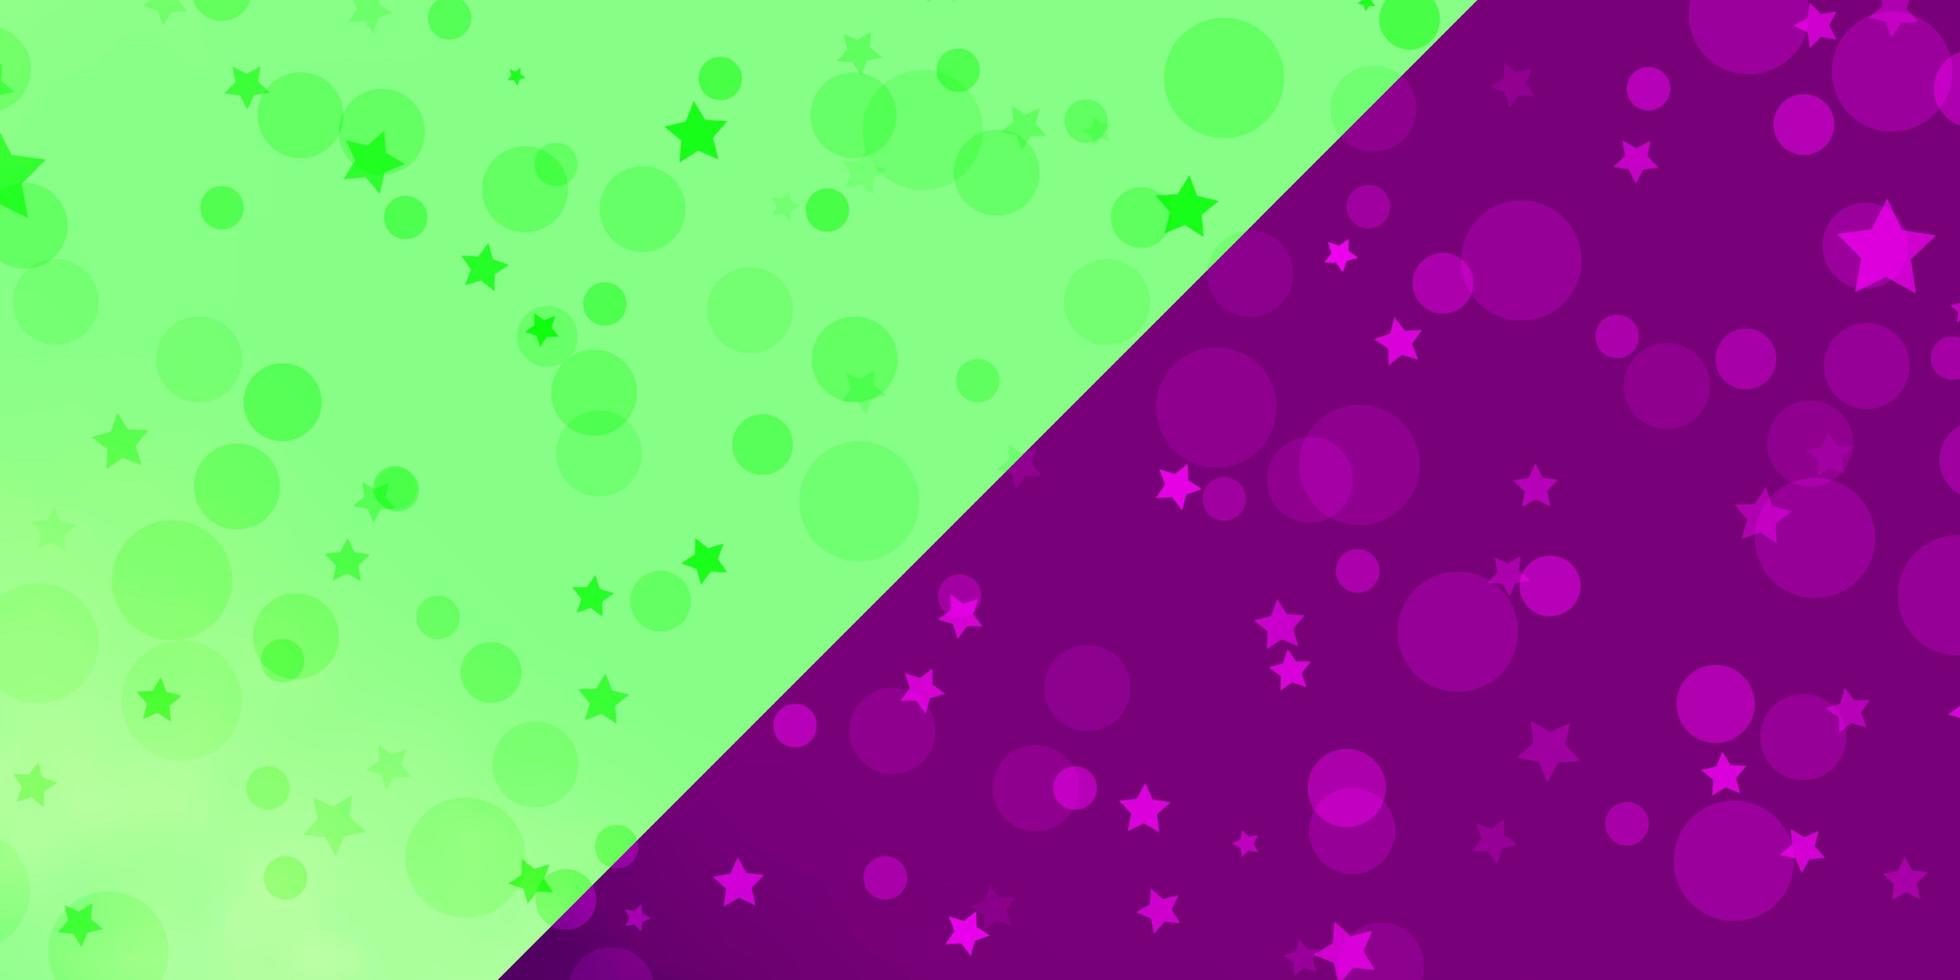 Vektorhintergrund mit Kreisen, Sternen. bunte Illustration mit Farbverlaufspunkten, Sternen. Design für Textilien, Stoffe, Tapeten. vektor